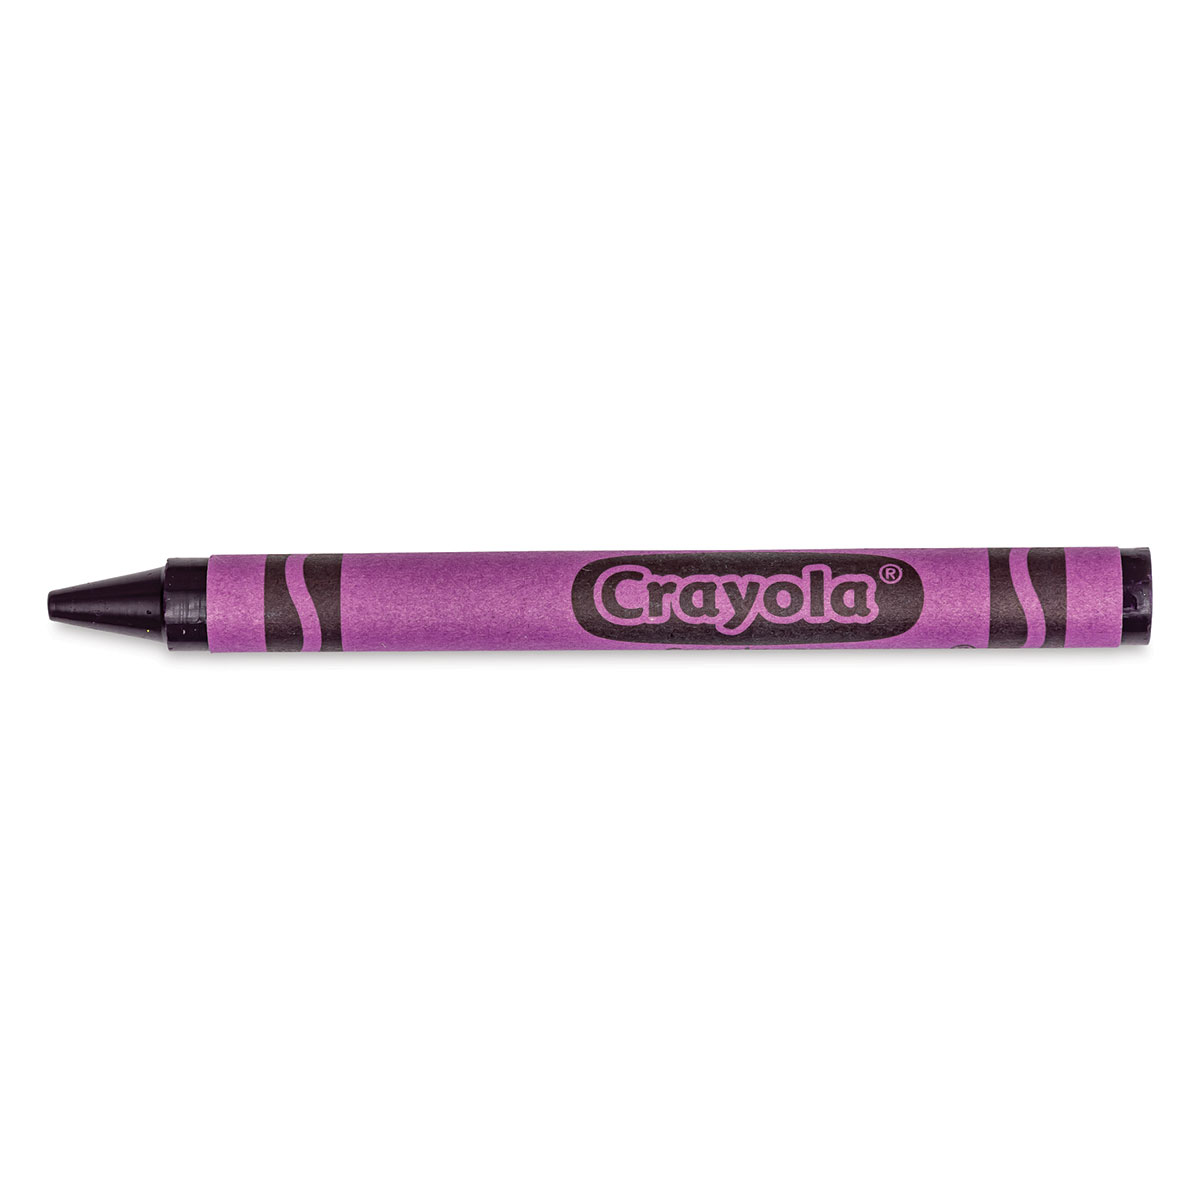 Crayola Crayon Cup 3-1/2 x 2-1/2 Inches Violet 